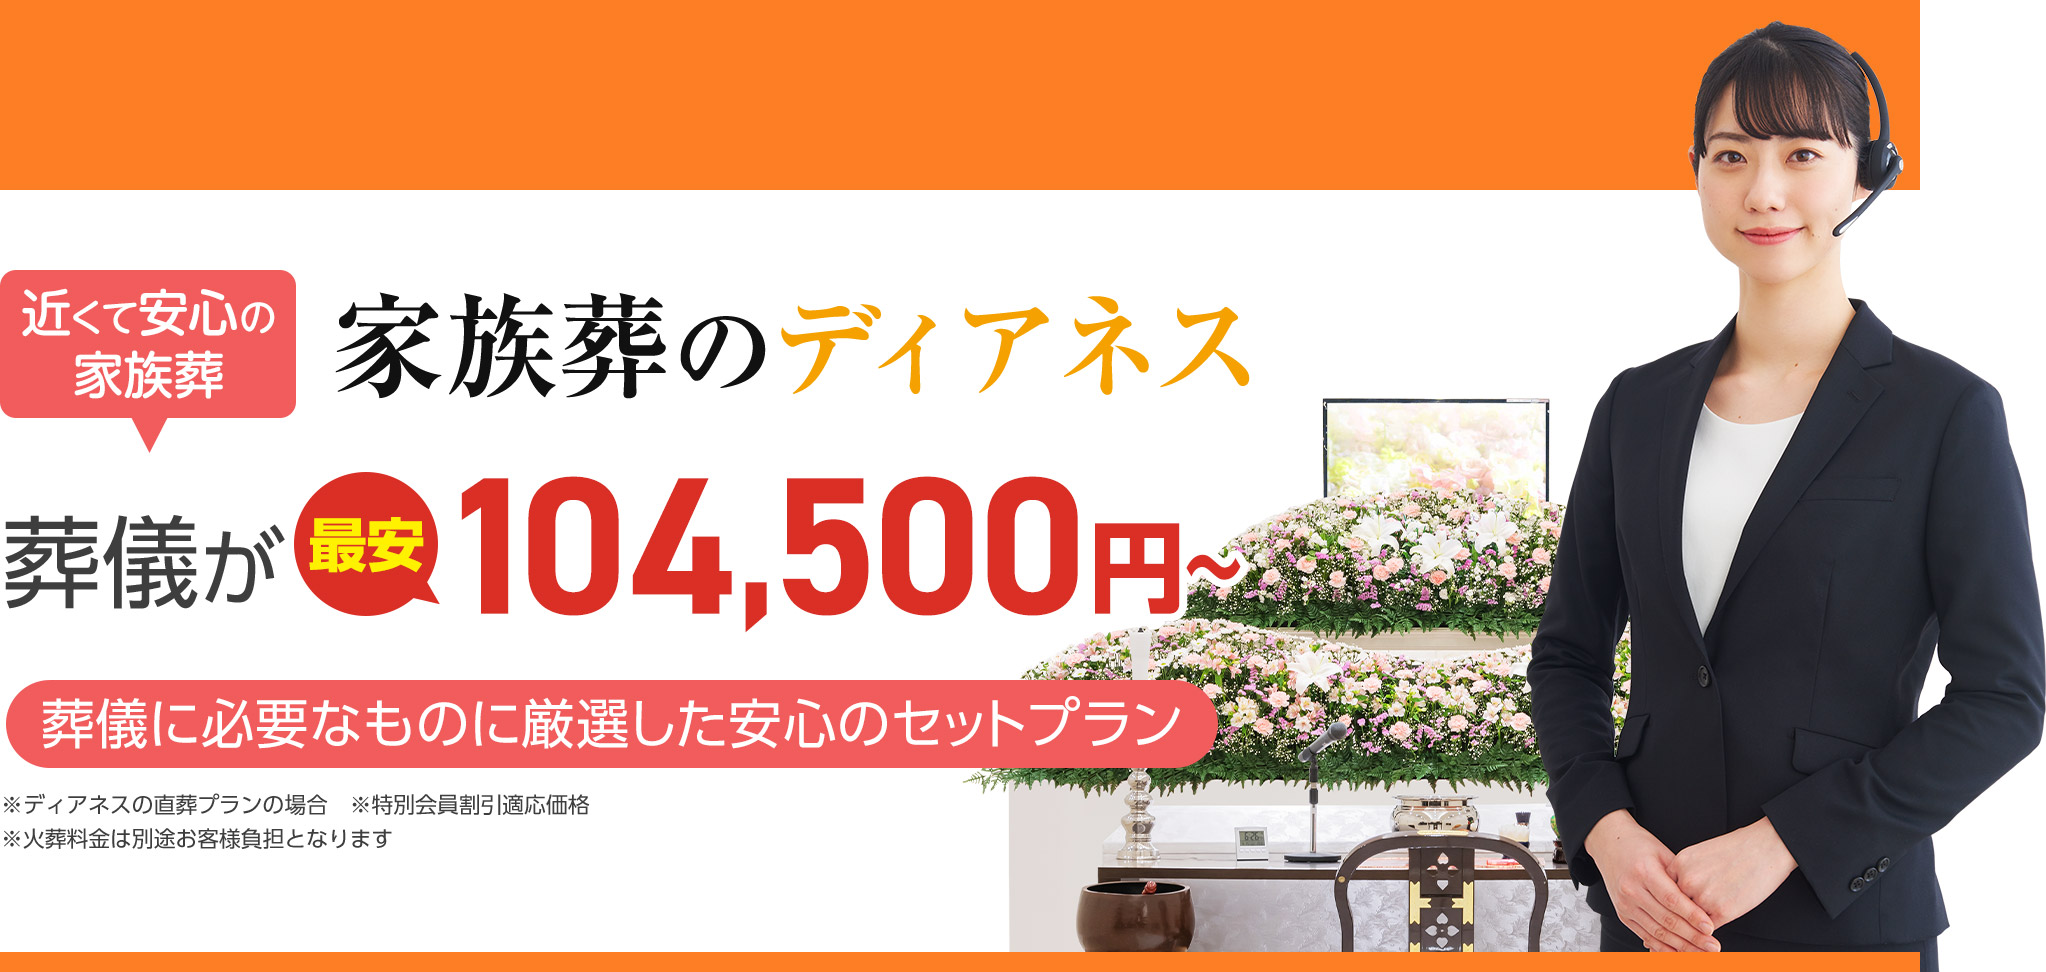 札幌市清田区で葬儀・葬式をお探しなら家族葬のディアネス 近くて安心の葬儀・家族葬が最安税込104,500円